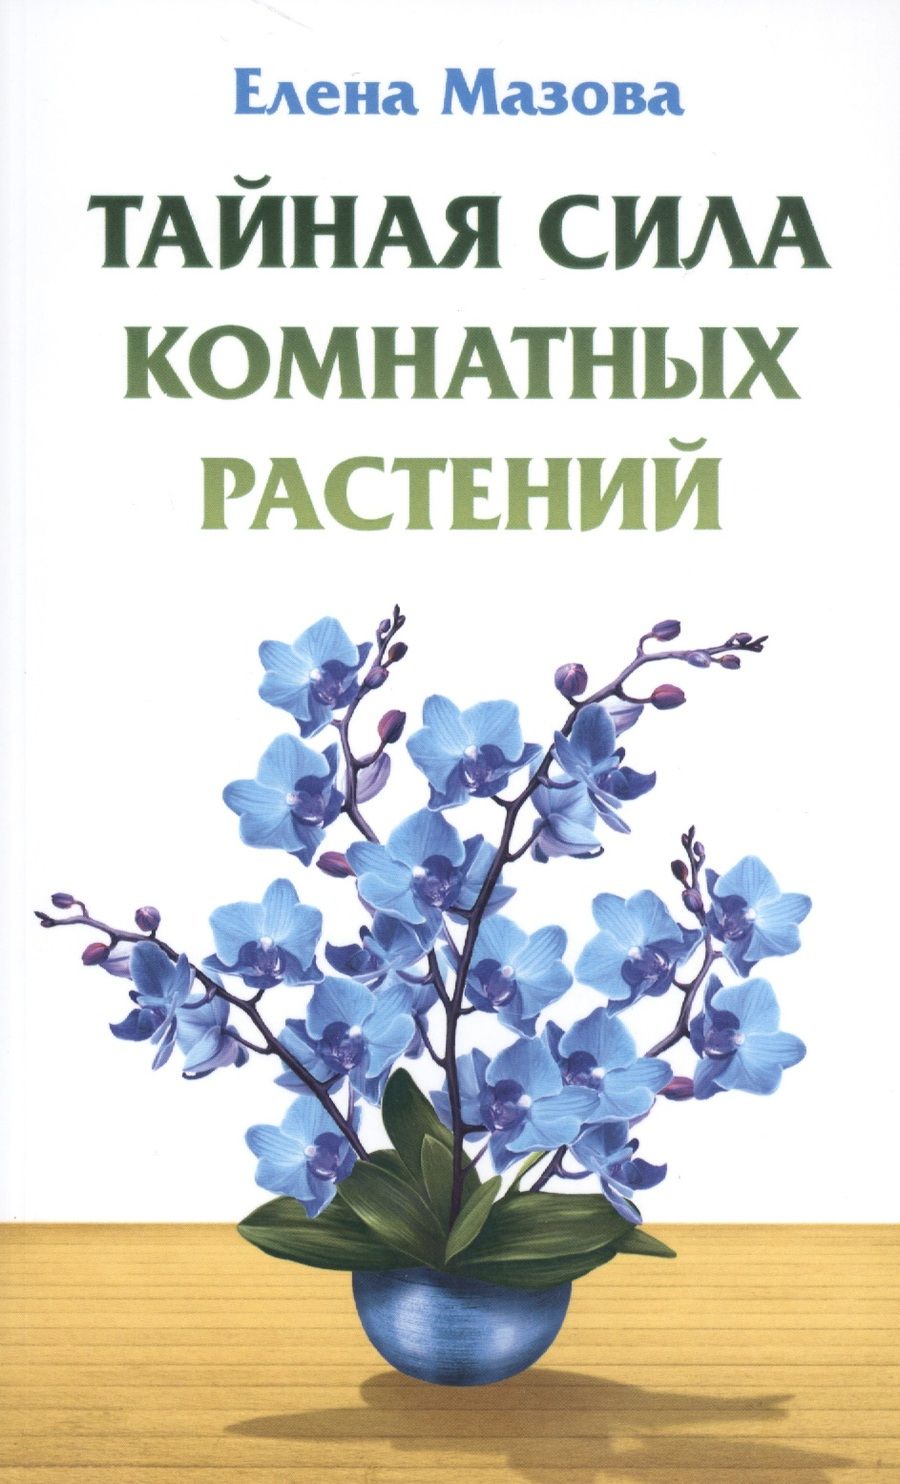 Обложка книги "Елена Мазова: Тайная сила комнатных растений"